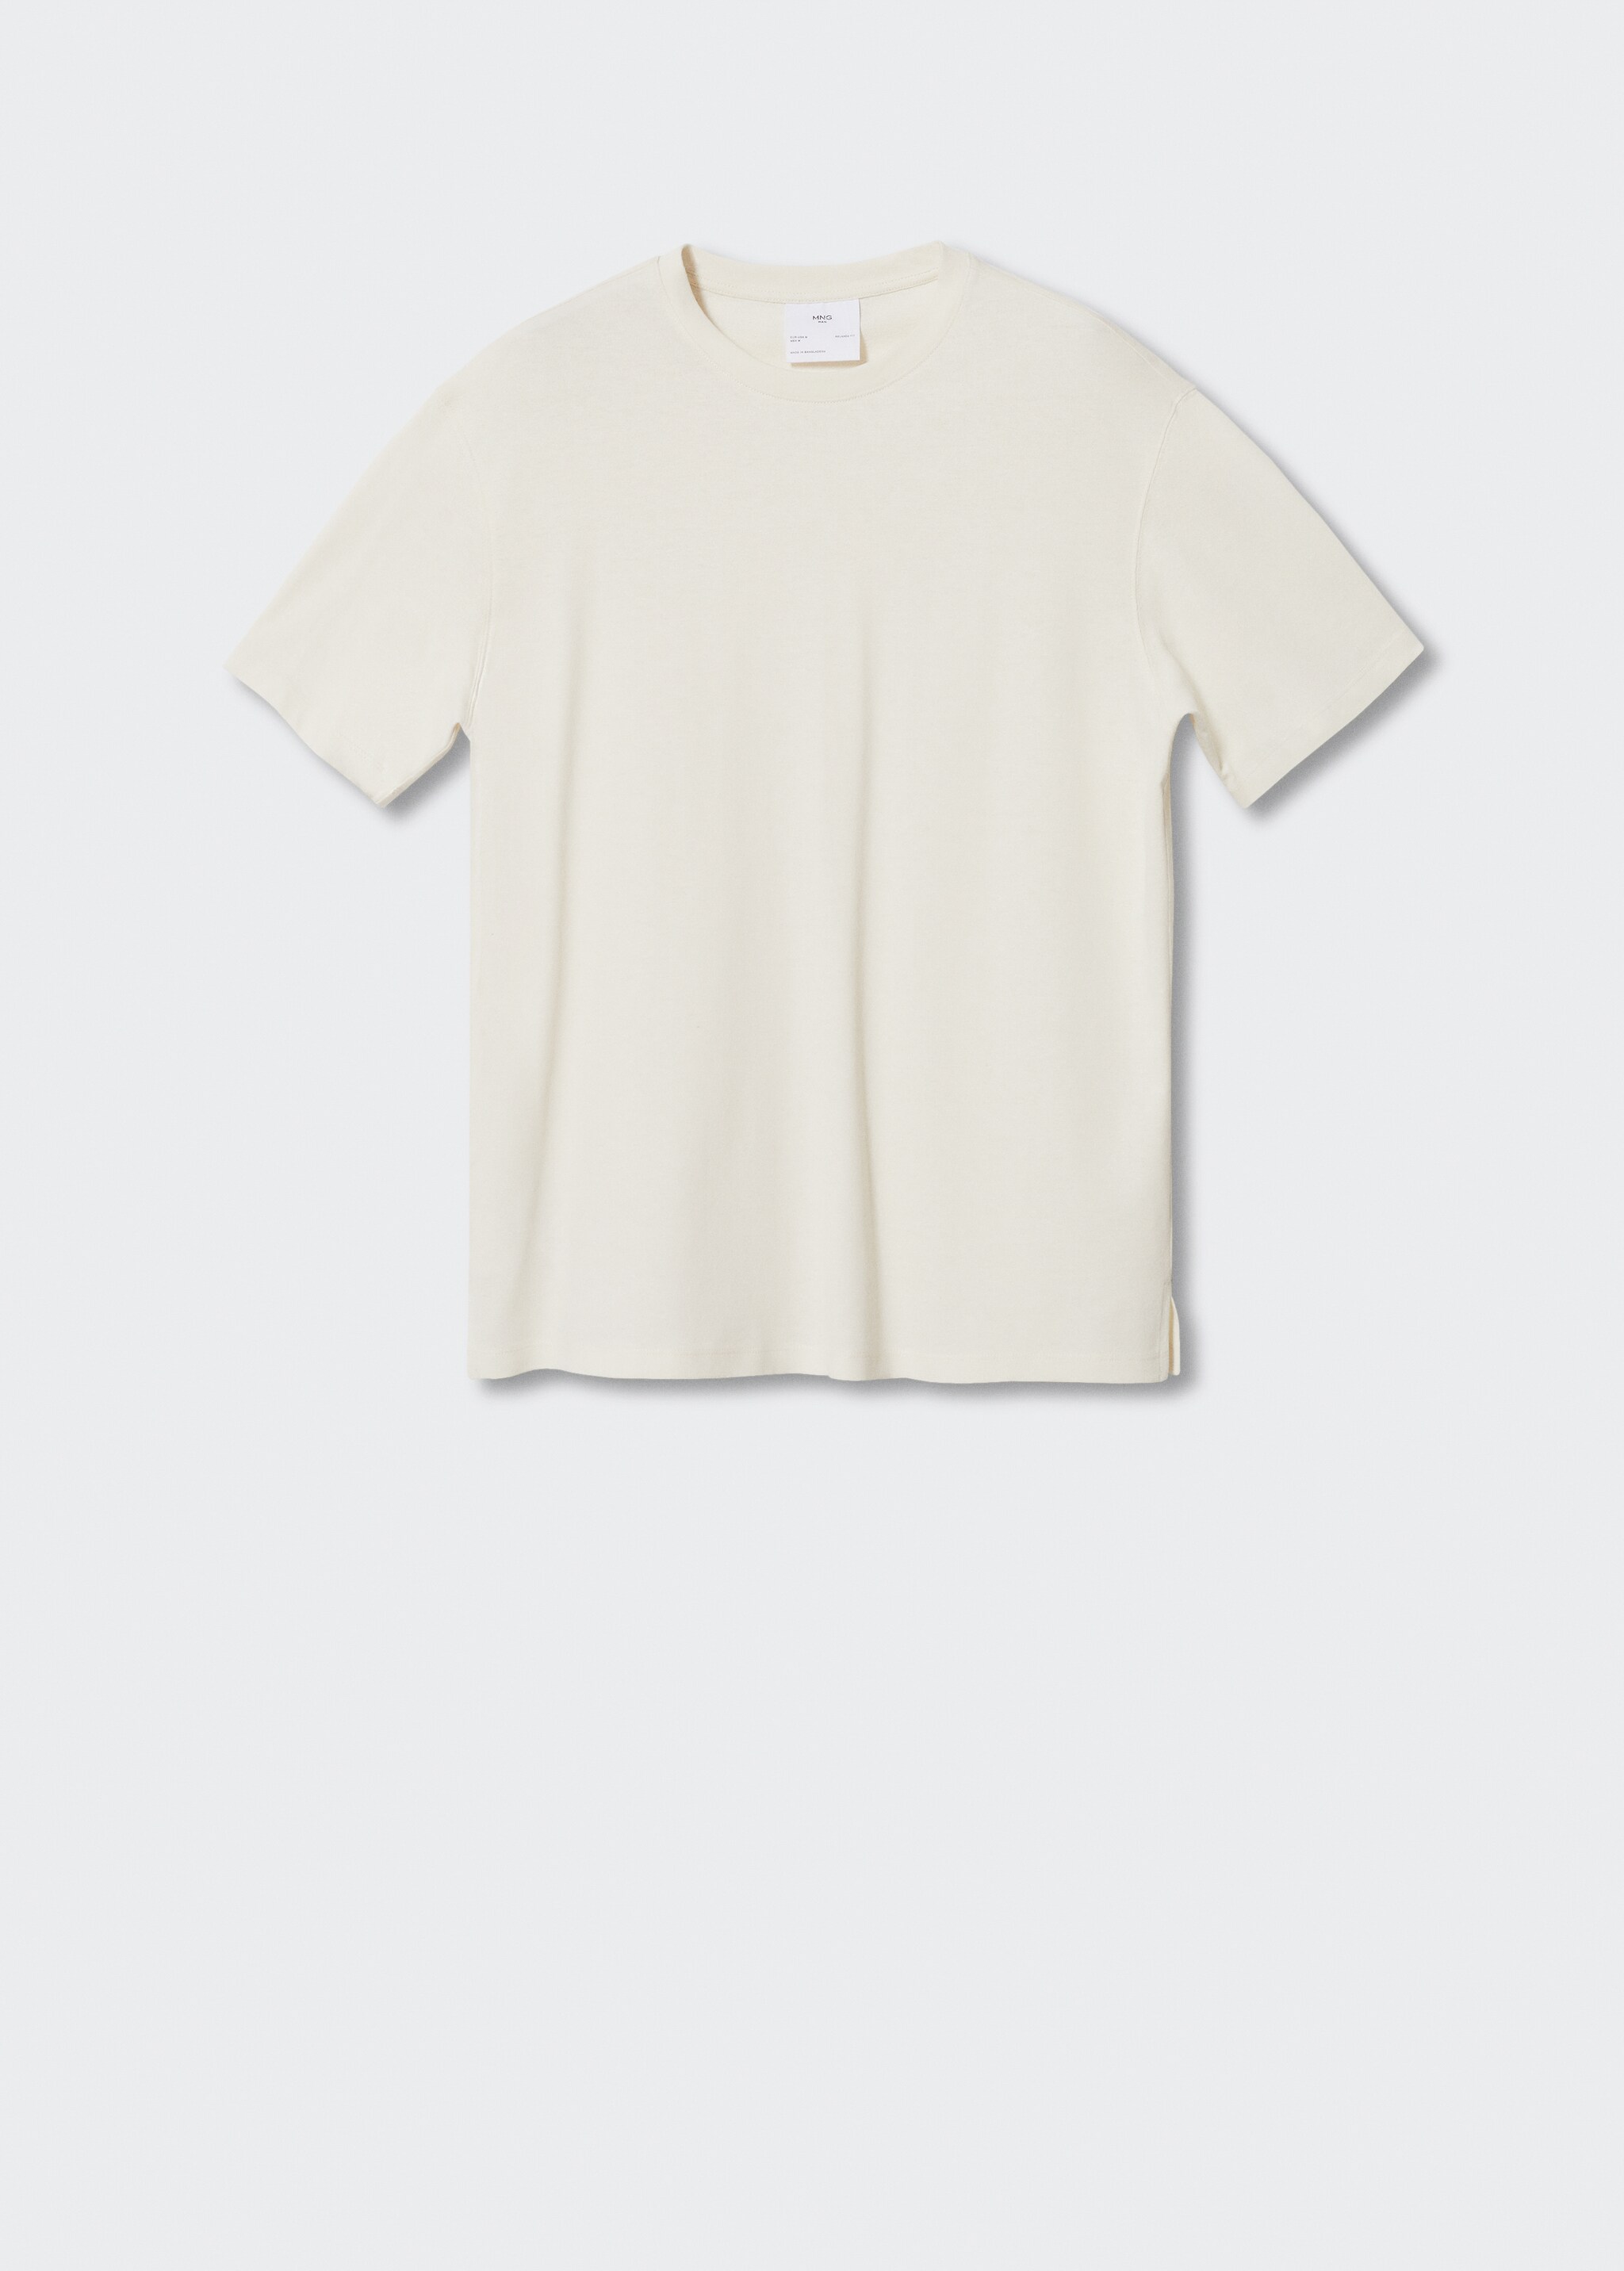 Camiseta algodón lino - Artículo sin modelo